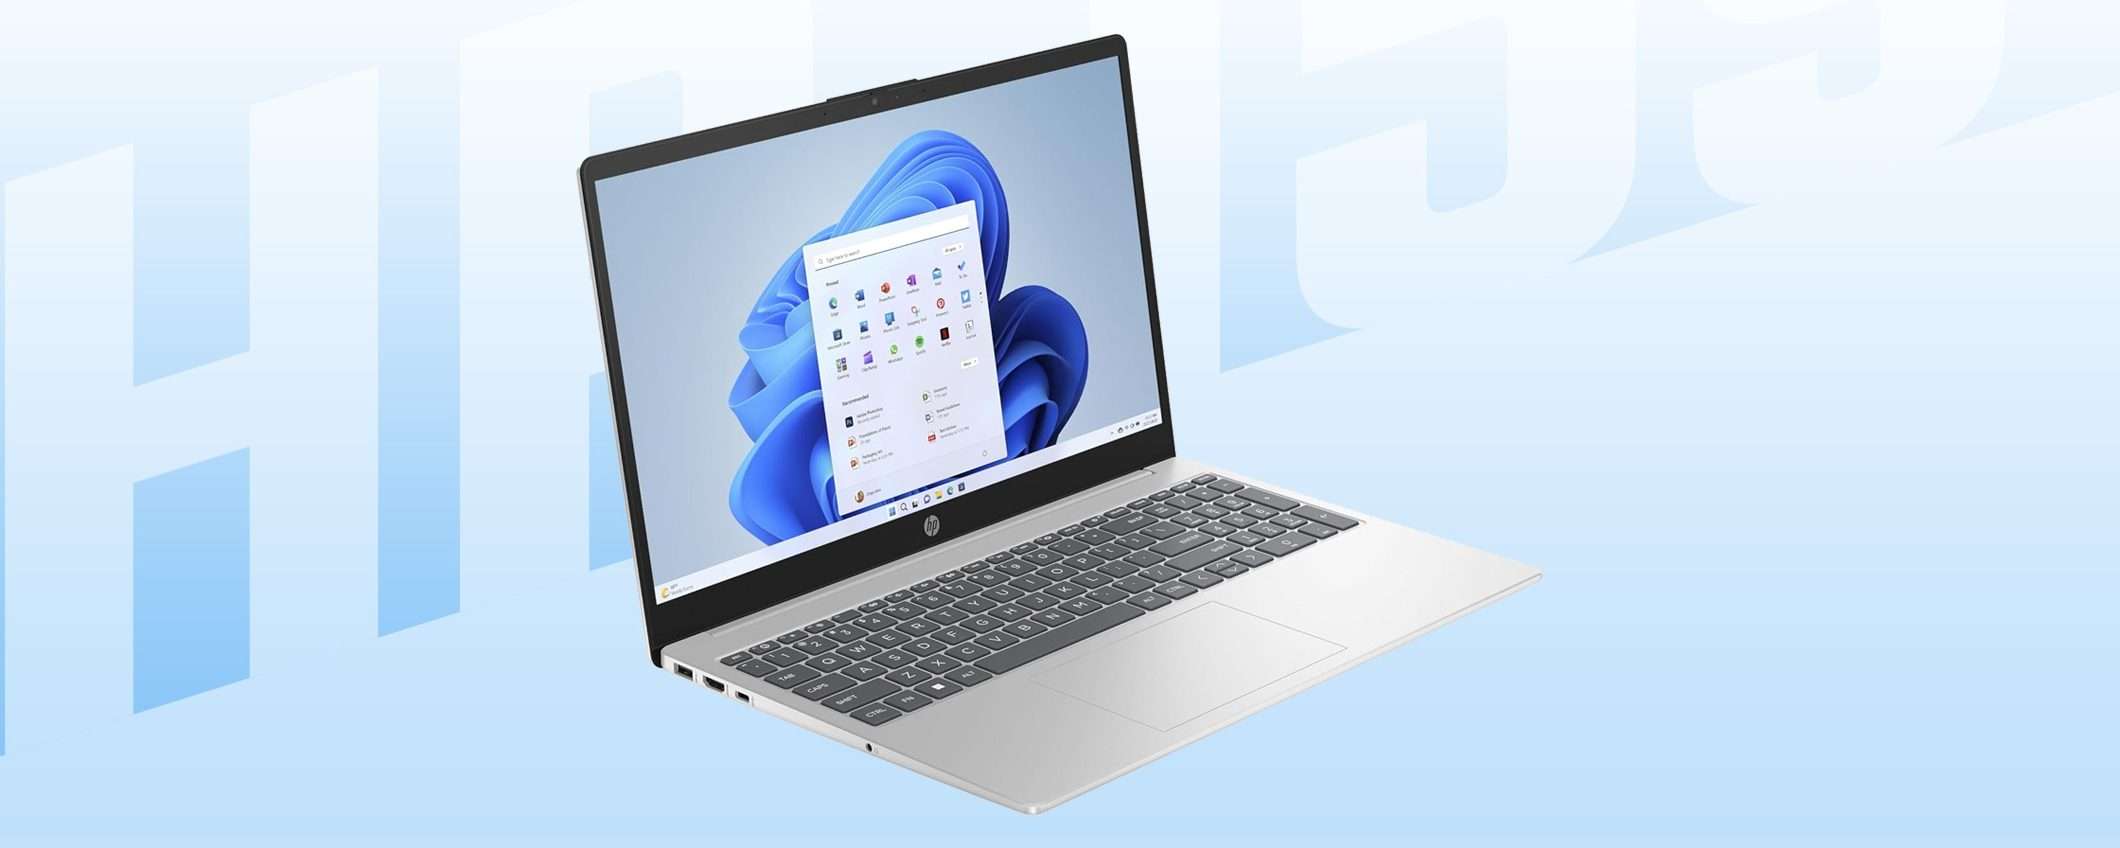 Notebook HP a 249€ con abbonamento Microsoft 365 gratis